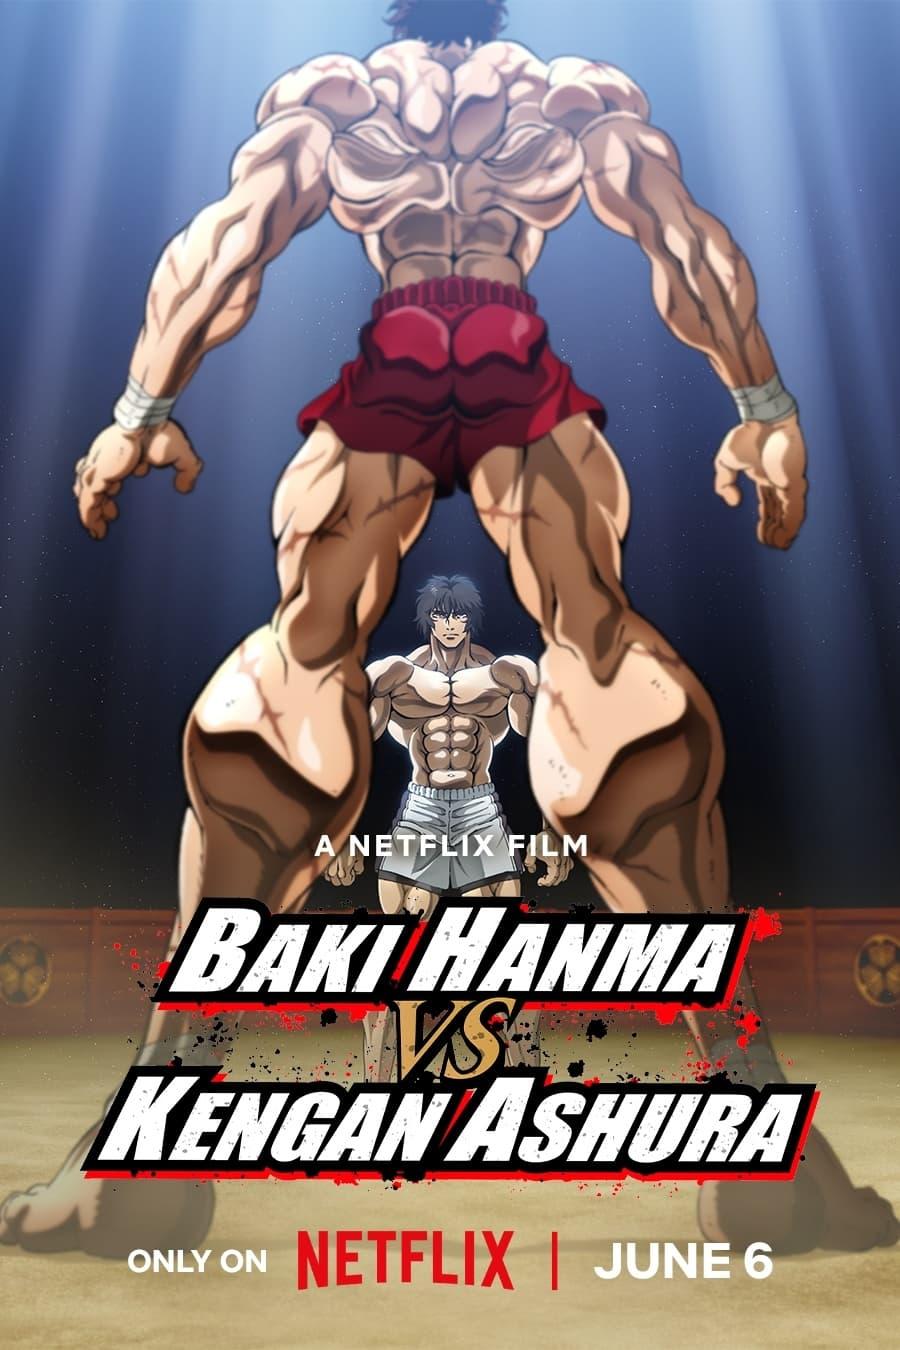 Baki Hanma VS Kengan Ashura poster